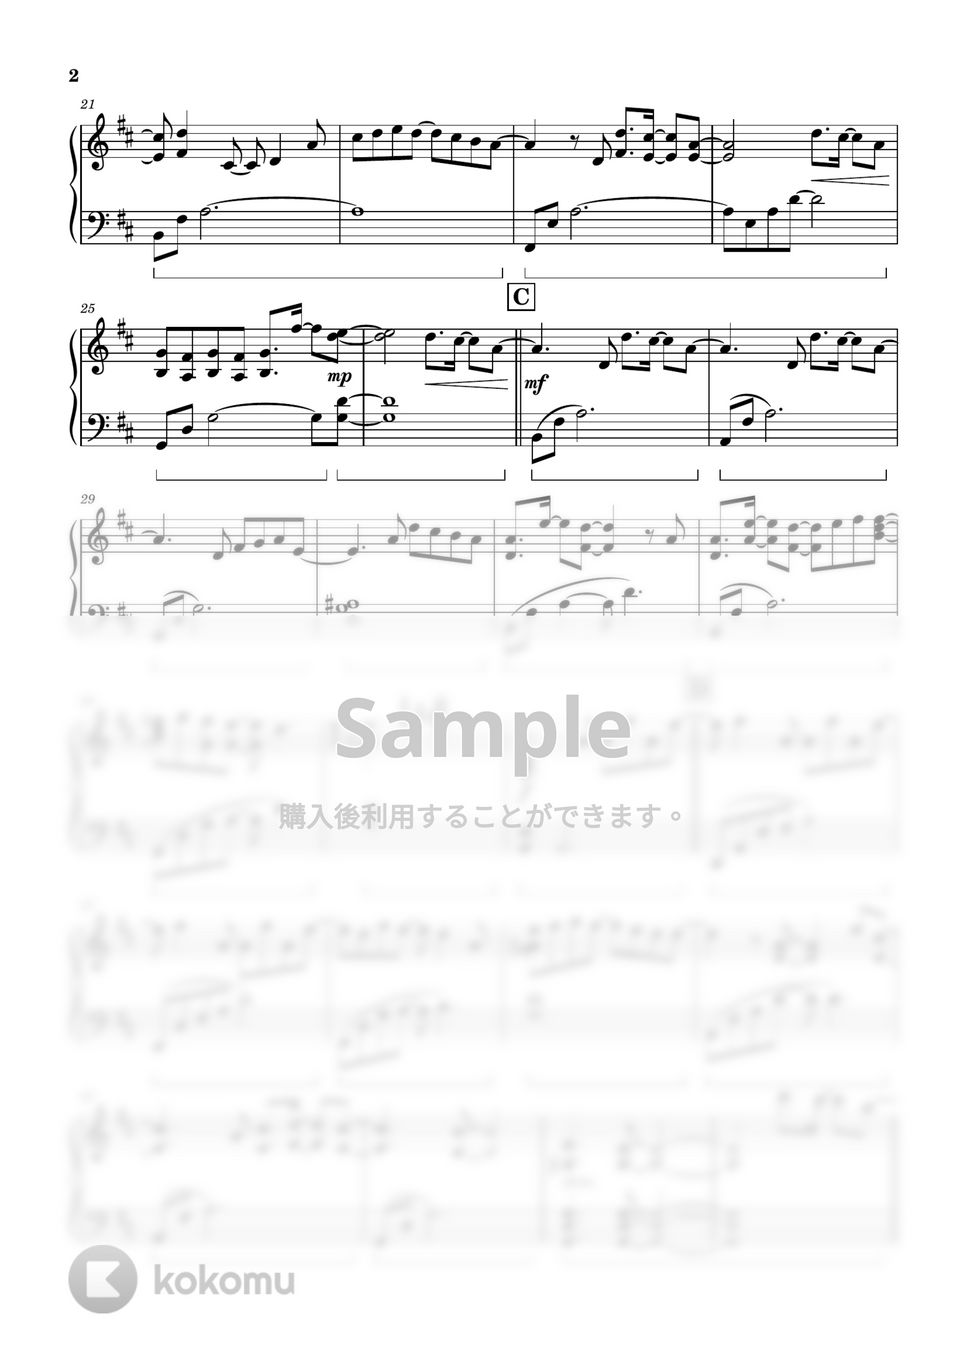 韓国ドラマ「二十五、二十一」 (Twenty-Five Twenty-One) - Starlight (Piano Ver.) by ちゃんRINA。